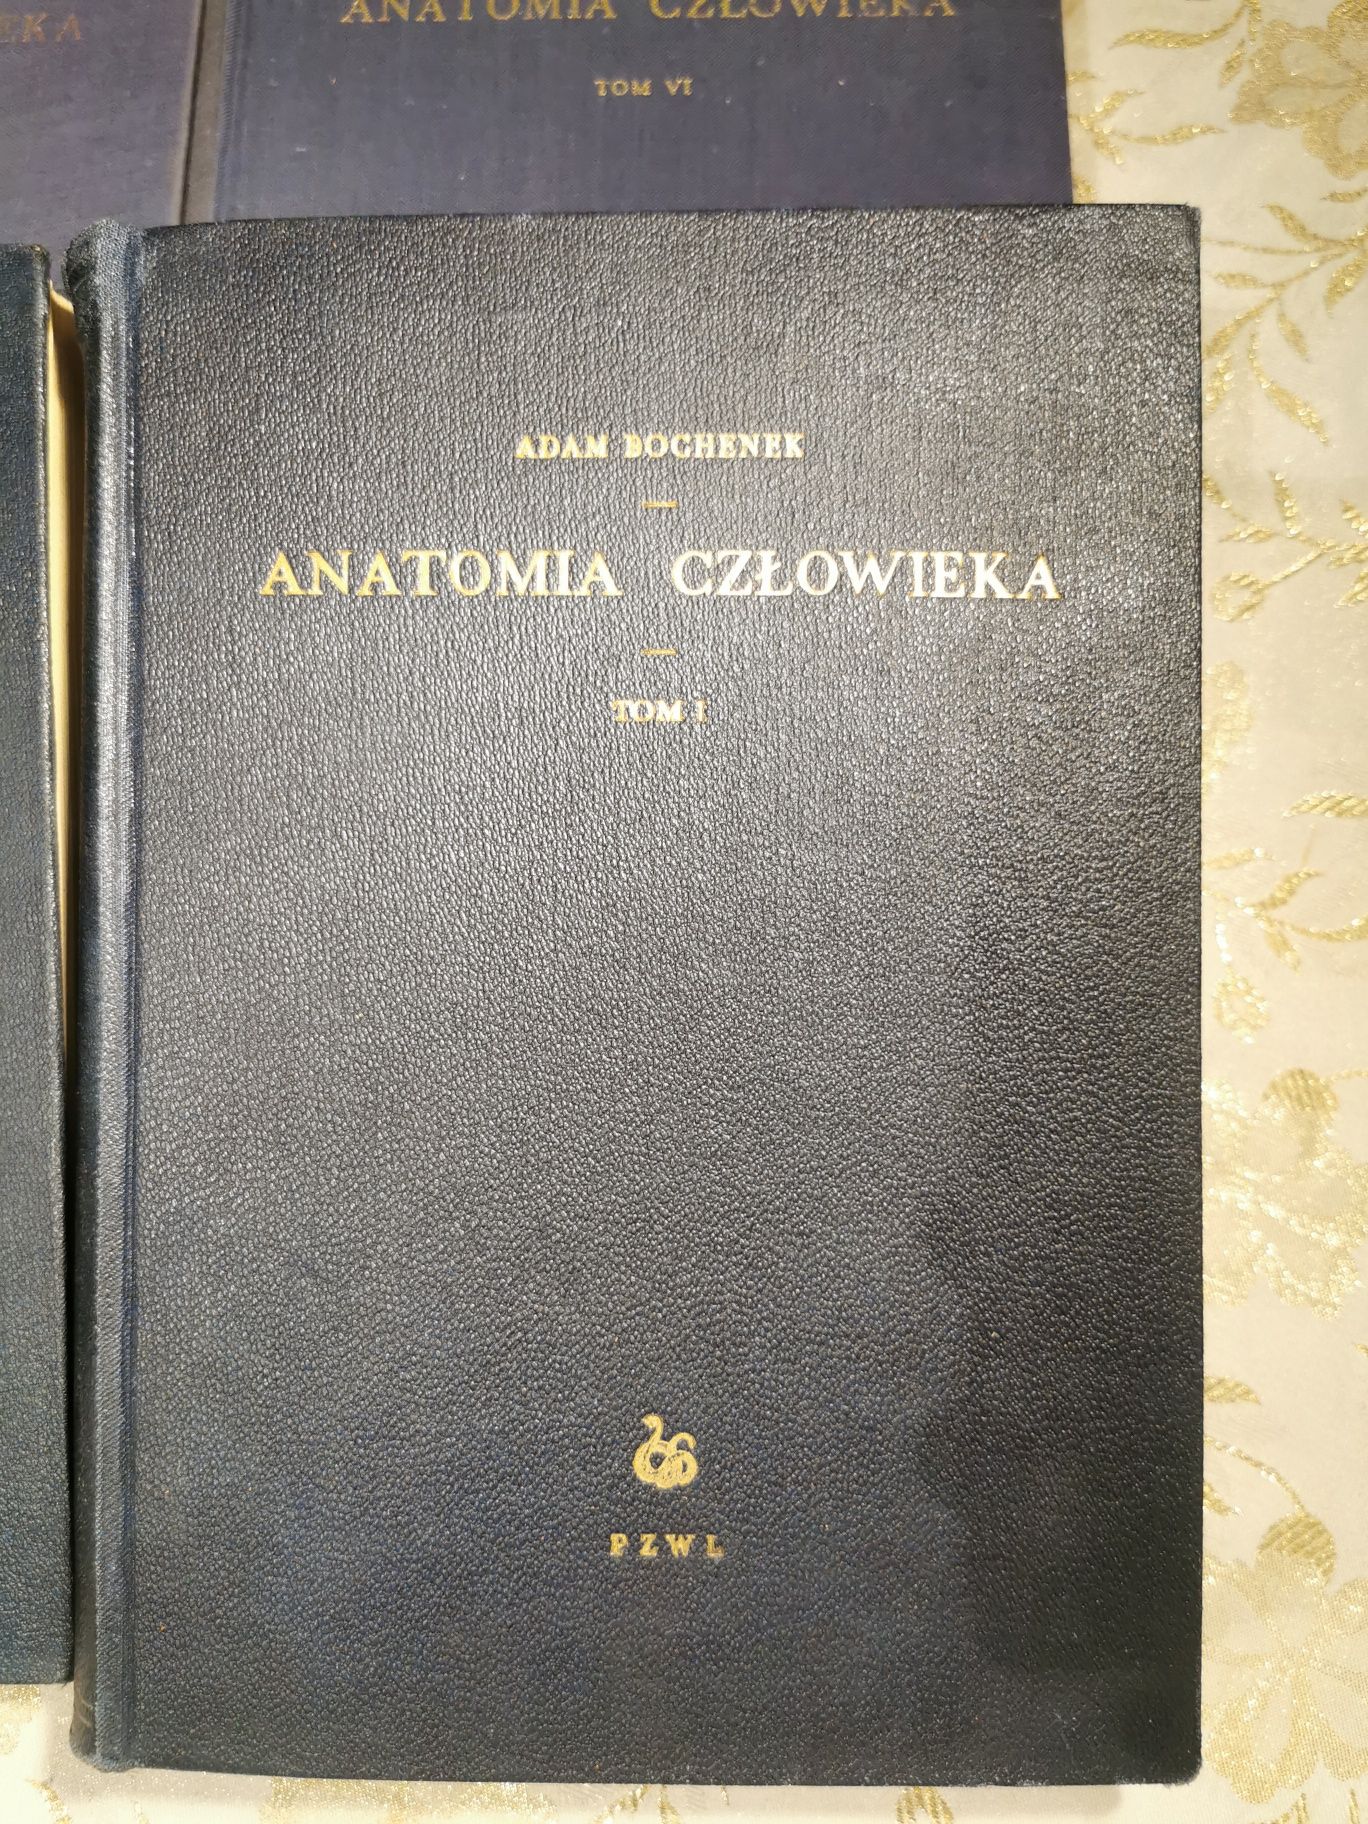 anatomia człowieka Bochenek reicher 1952